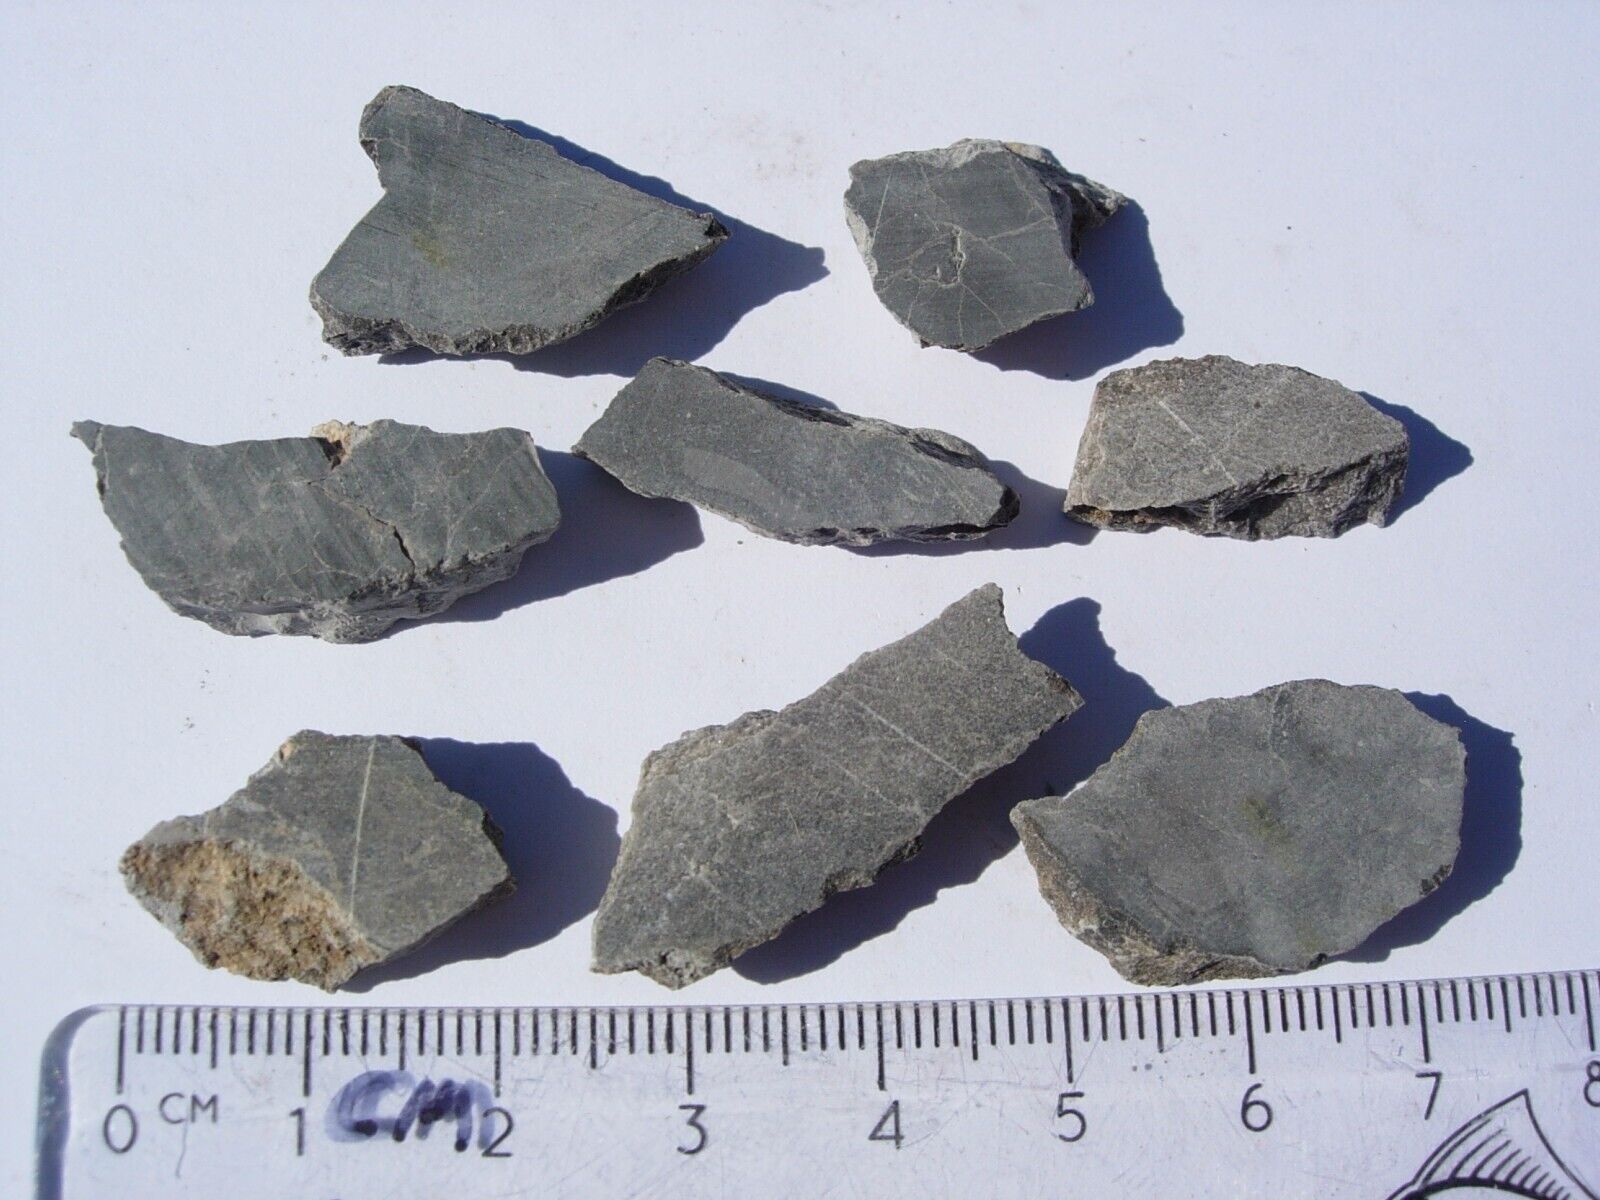 all 16.3 grams Alamo meteorite Impact Breccia from Nevada - unpolished slices